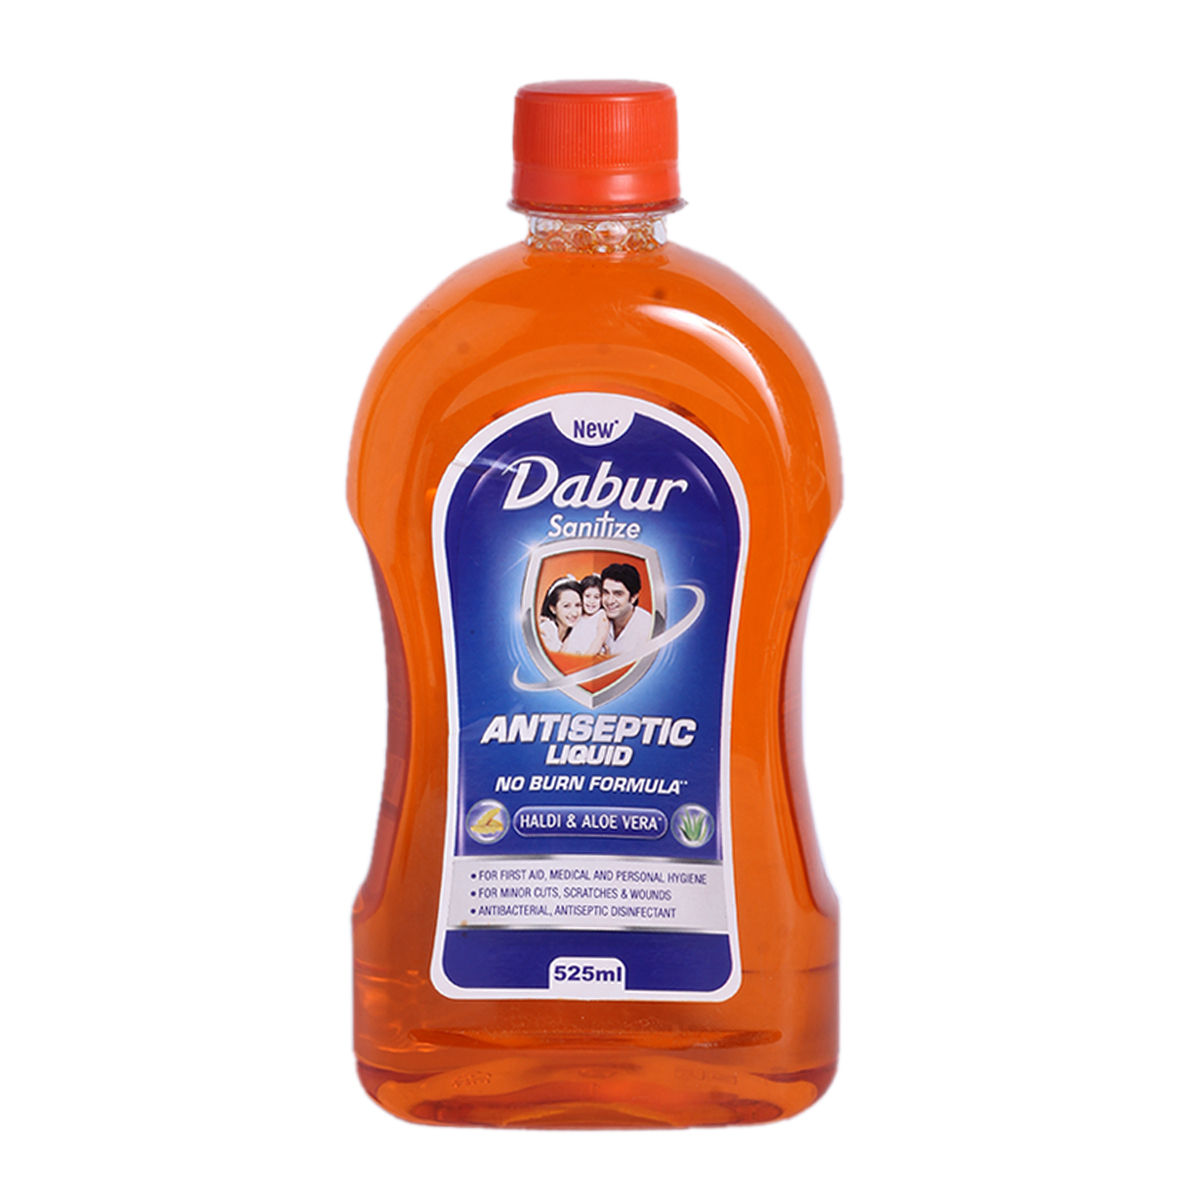 Dabur Sanitize Antiseptic Liquid, 525 ml, Pack of 1 